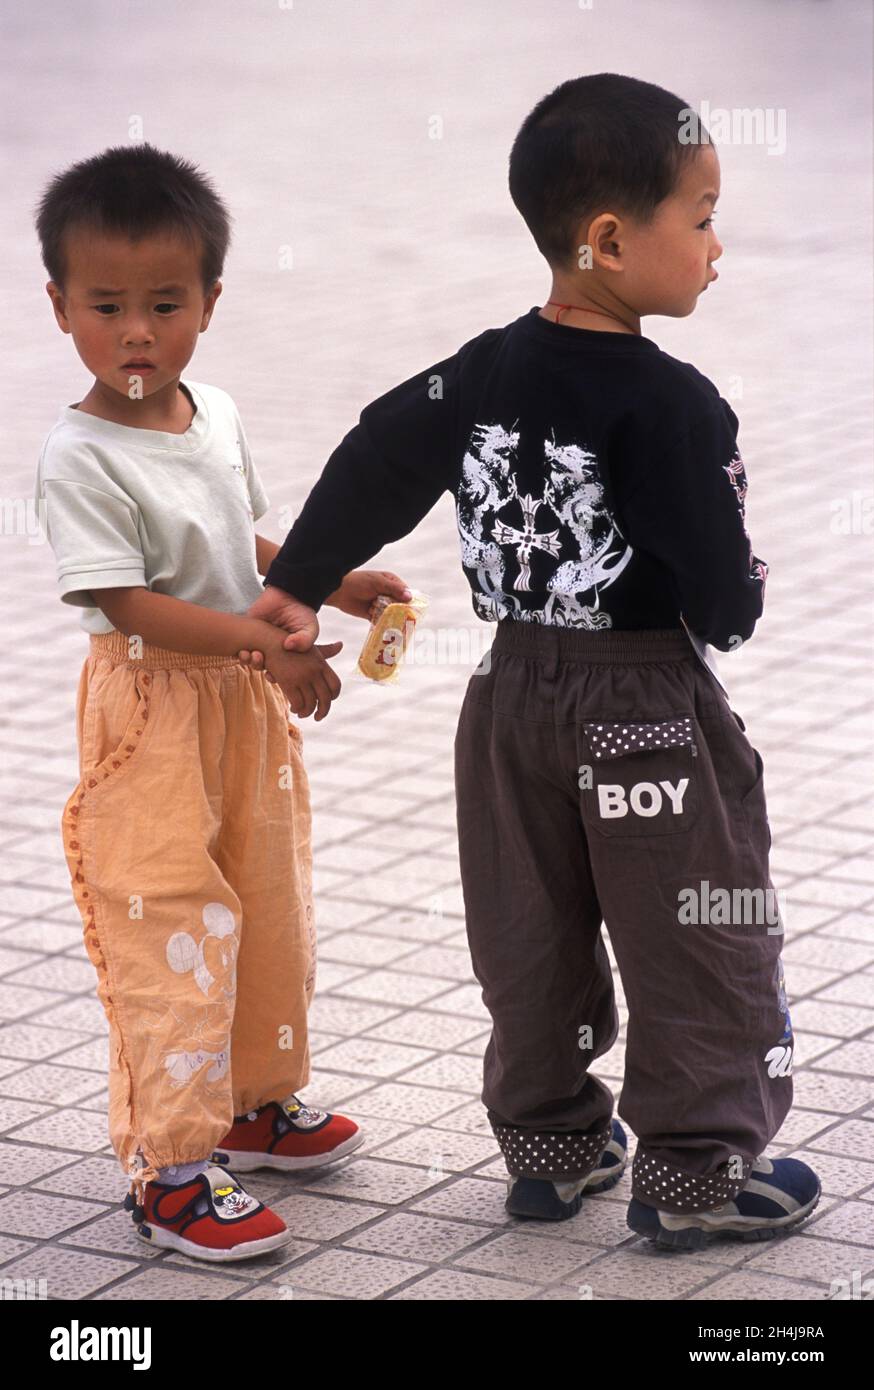 China 2000s. Dos niños chinos jóvenes con ropa de etiqueta de diseño de estilo occidental. En los pantalones de uno de ellos está el logotipo 'Boy'. Hangzhou, provincia de Zhejiang, China. 2000s, 2001 HOMER SYKES. Foto de stock